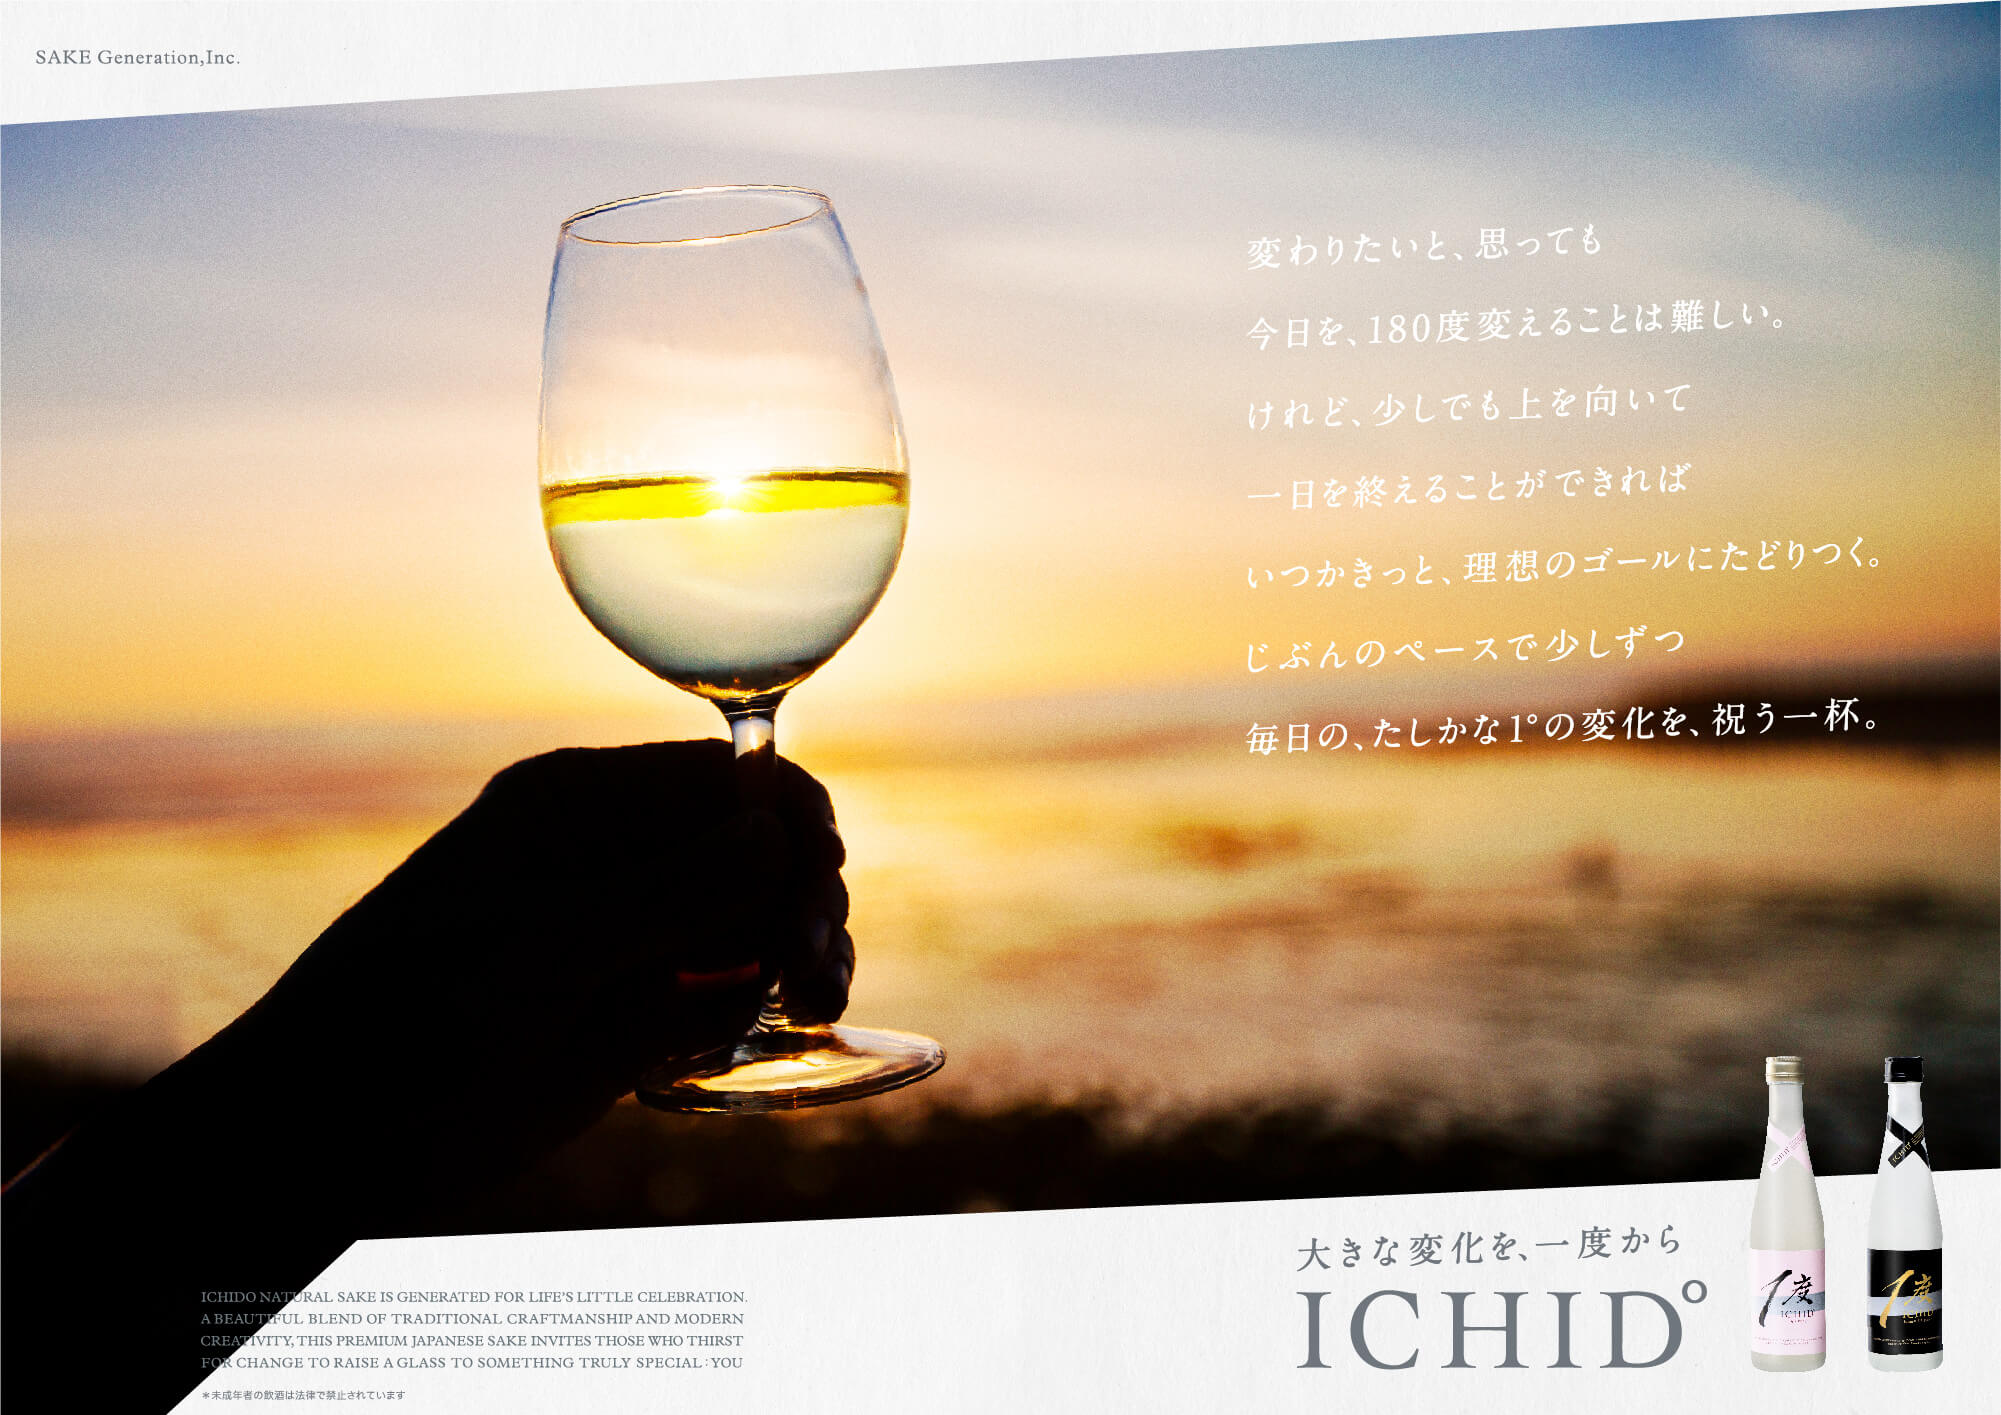 ICHIDO Product Brandingのサンプル画像です